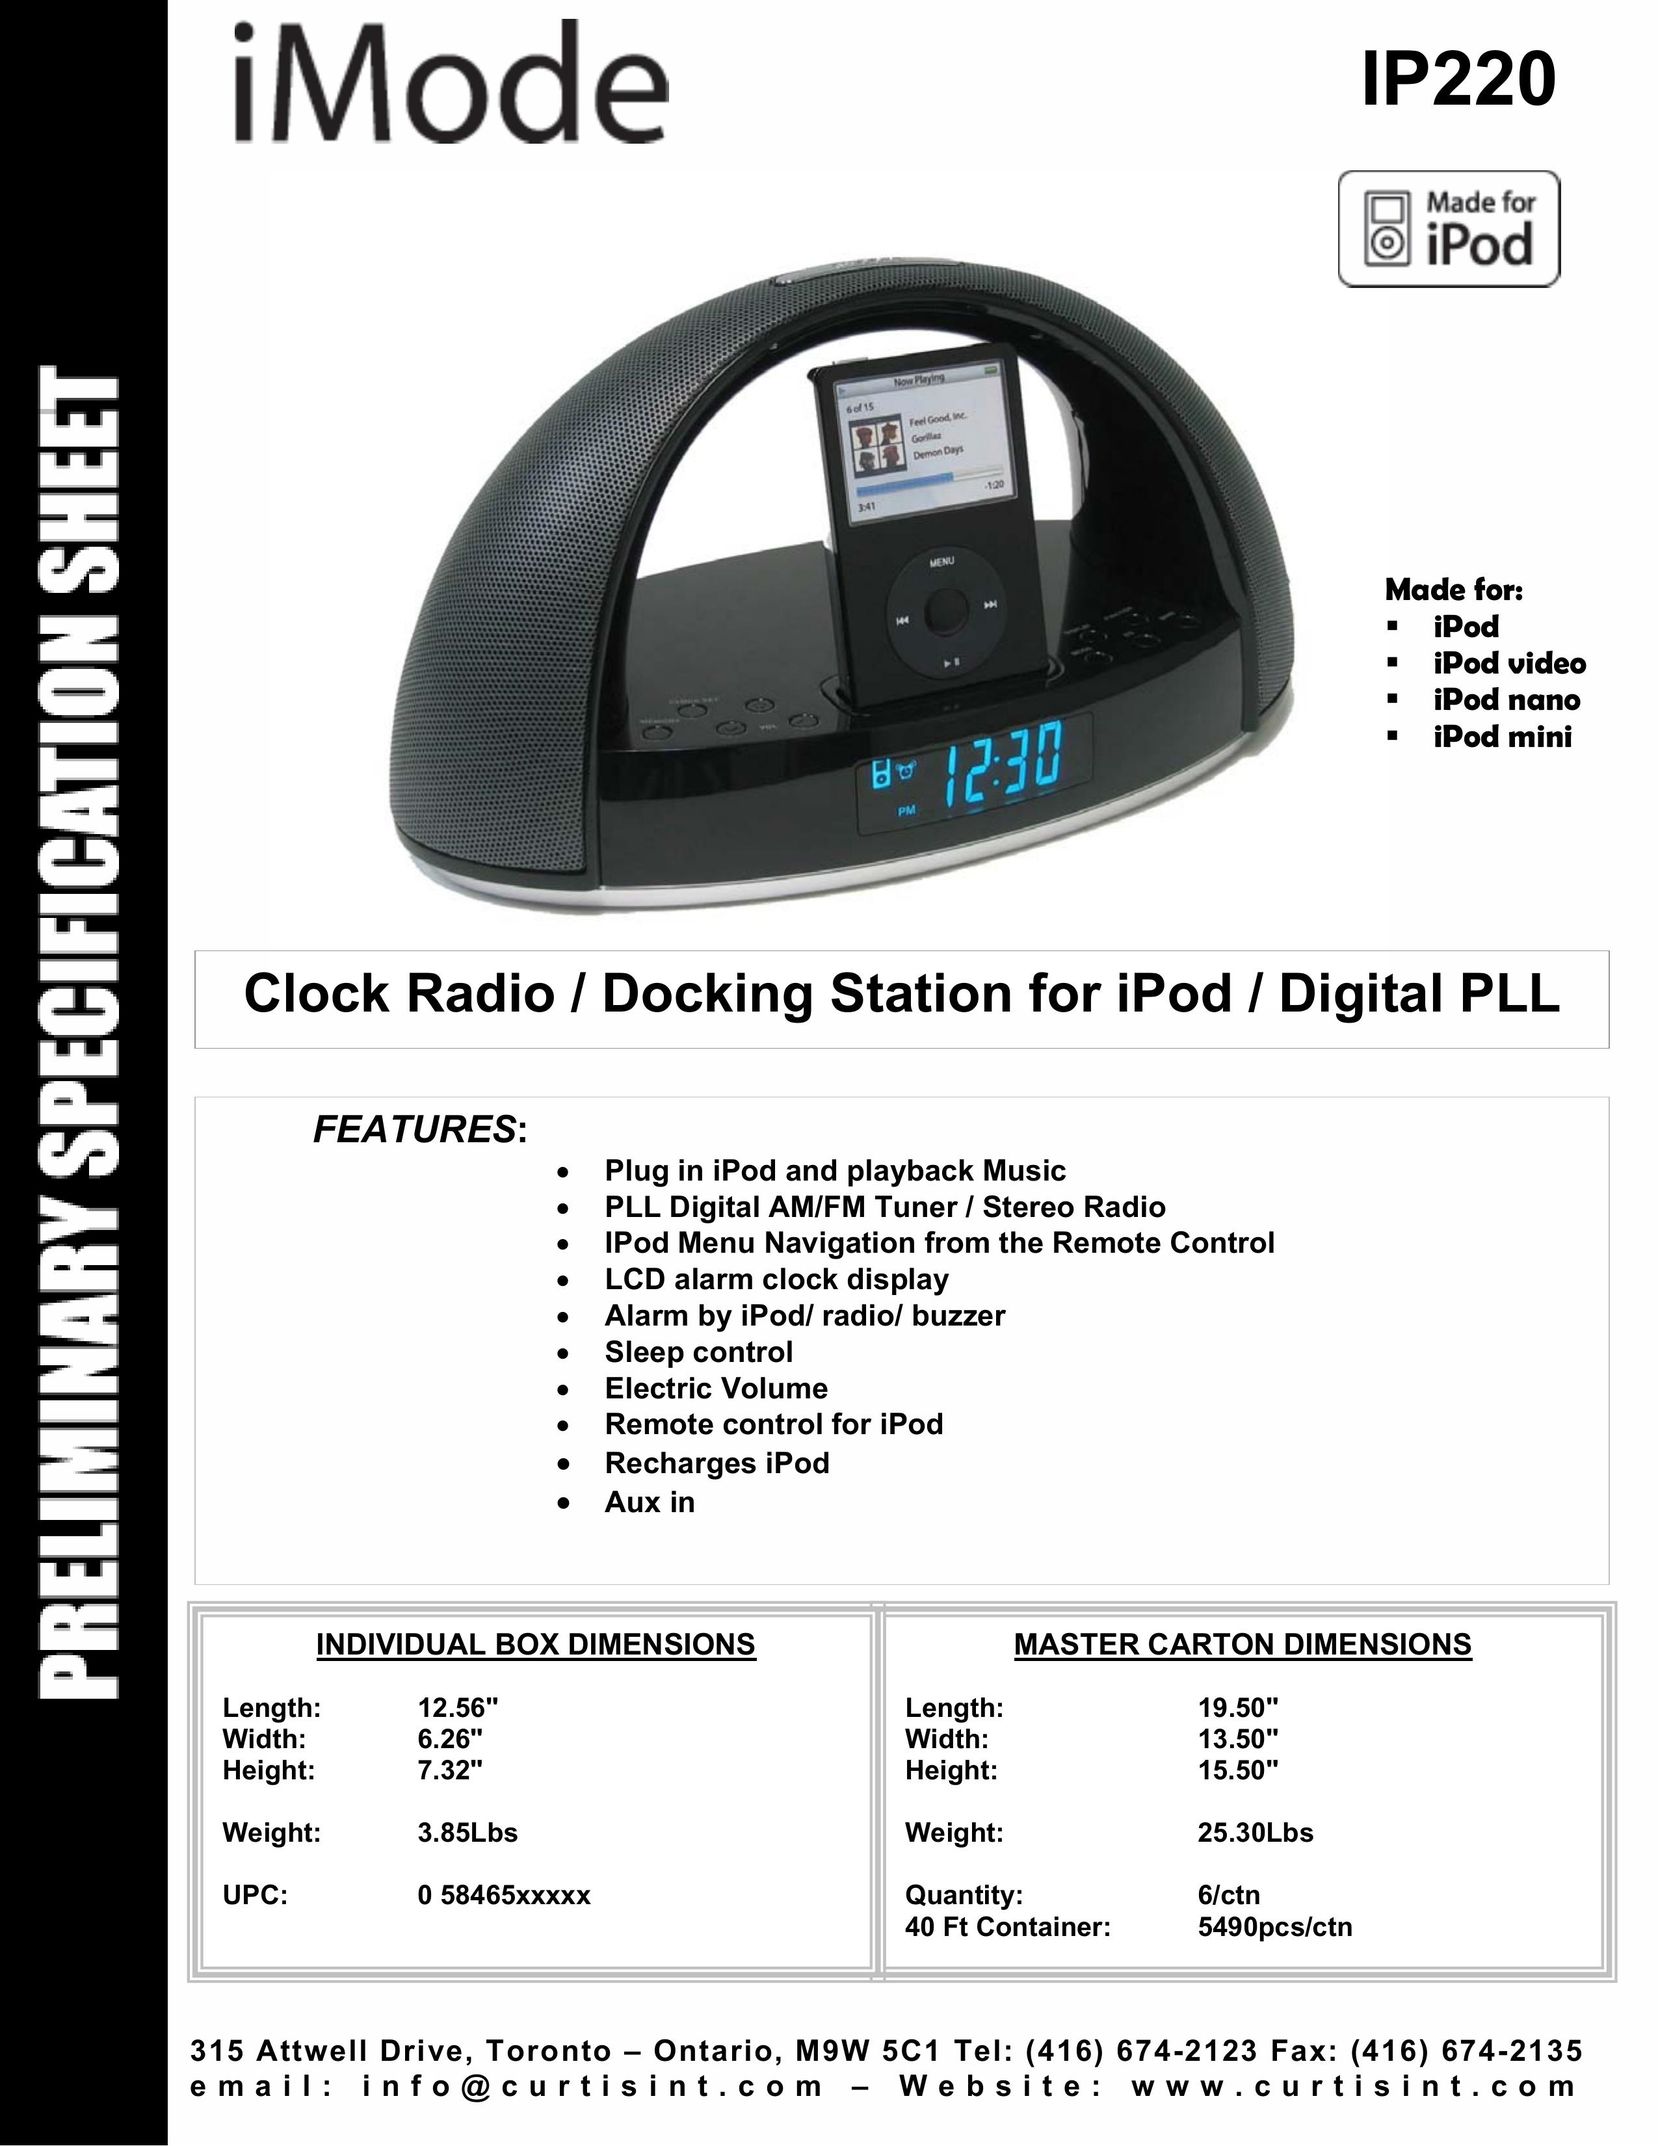 Curtis IP220 MP3 Docking Station User Manual